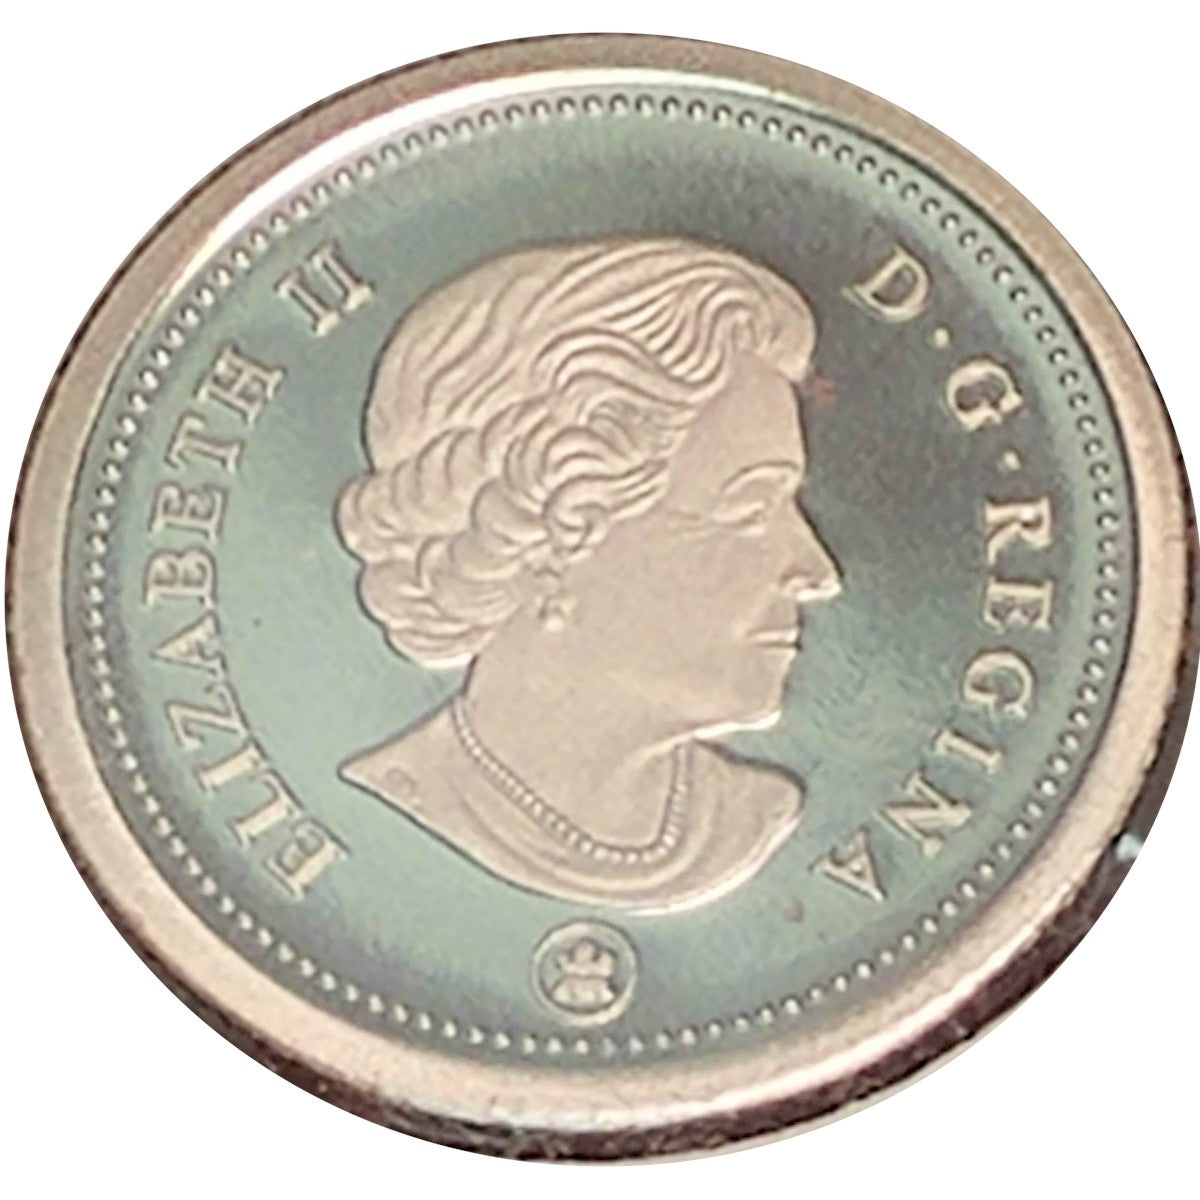 2016 Canada 10-cent Proof (non-silver)